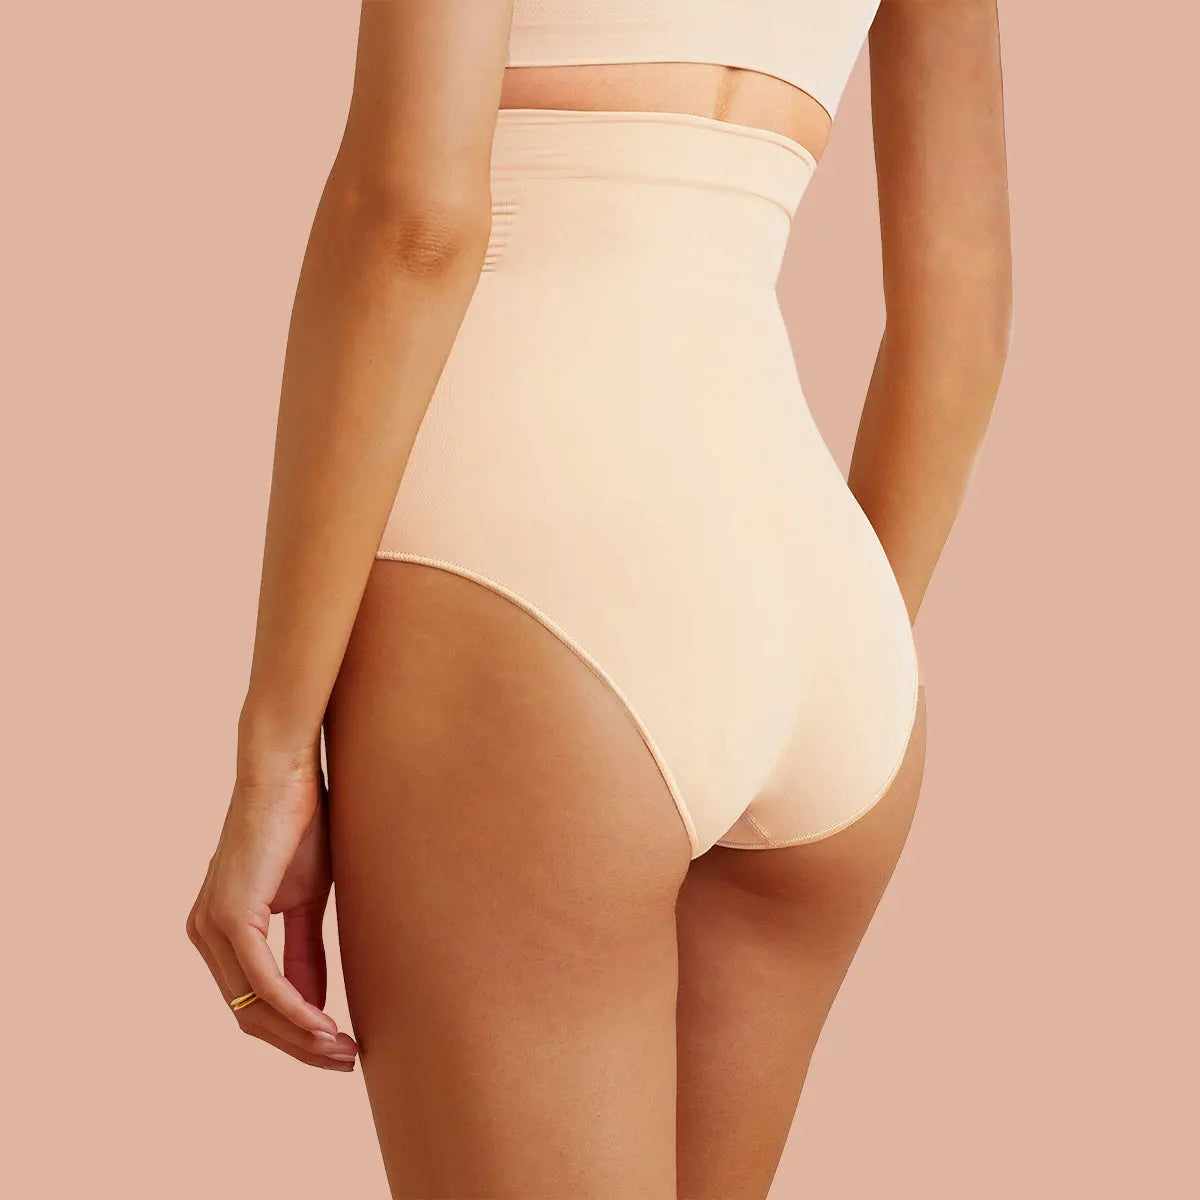 HZMM Periods Underwear Seamless Body Shaper with High Waist, Butt